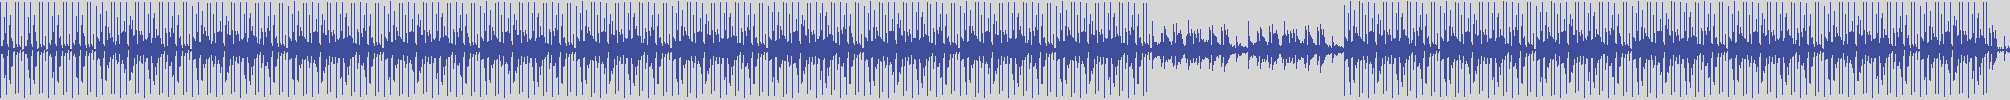 noclouds_chillout [NOC065] Jarome Adam - Apue [Chilling Mix] audio wave form